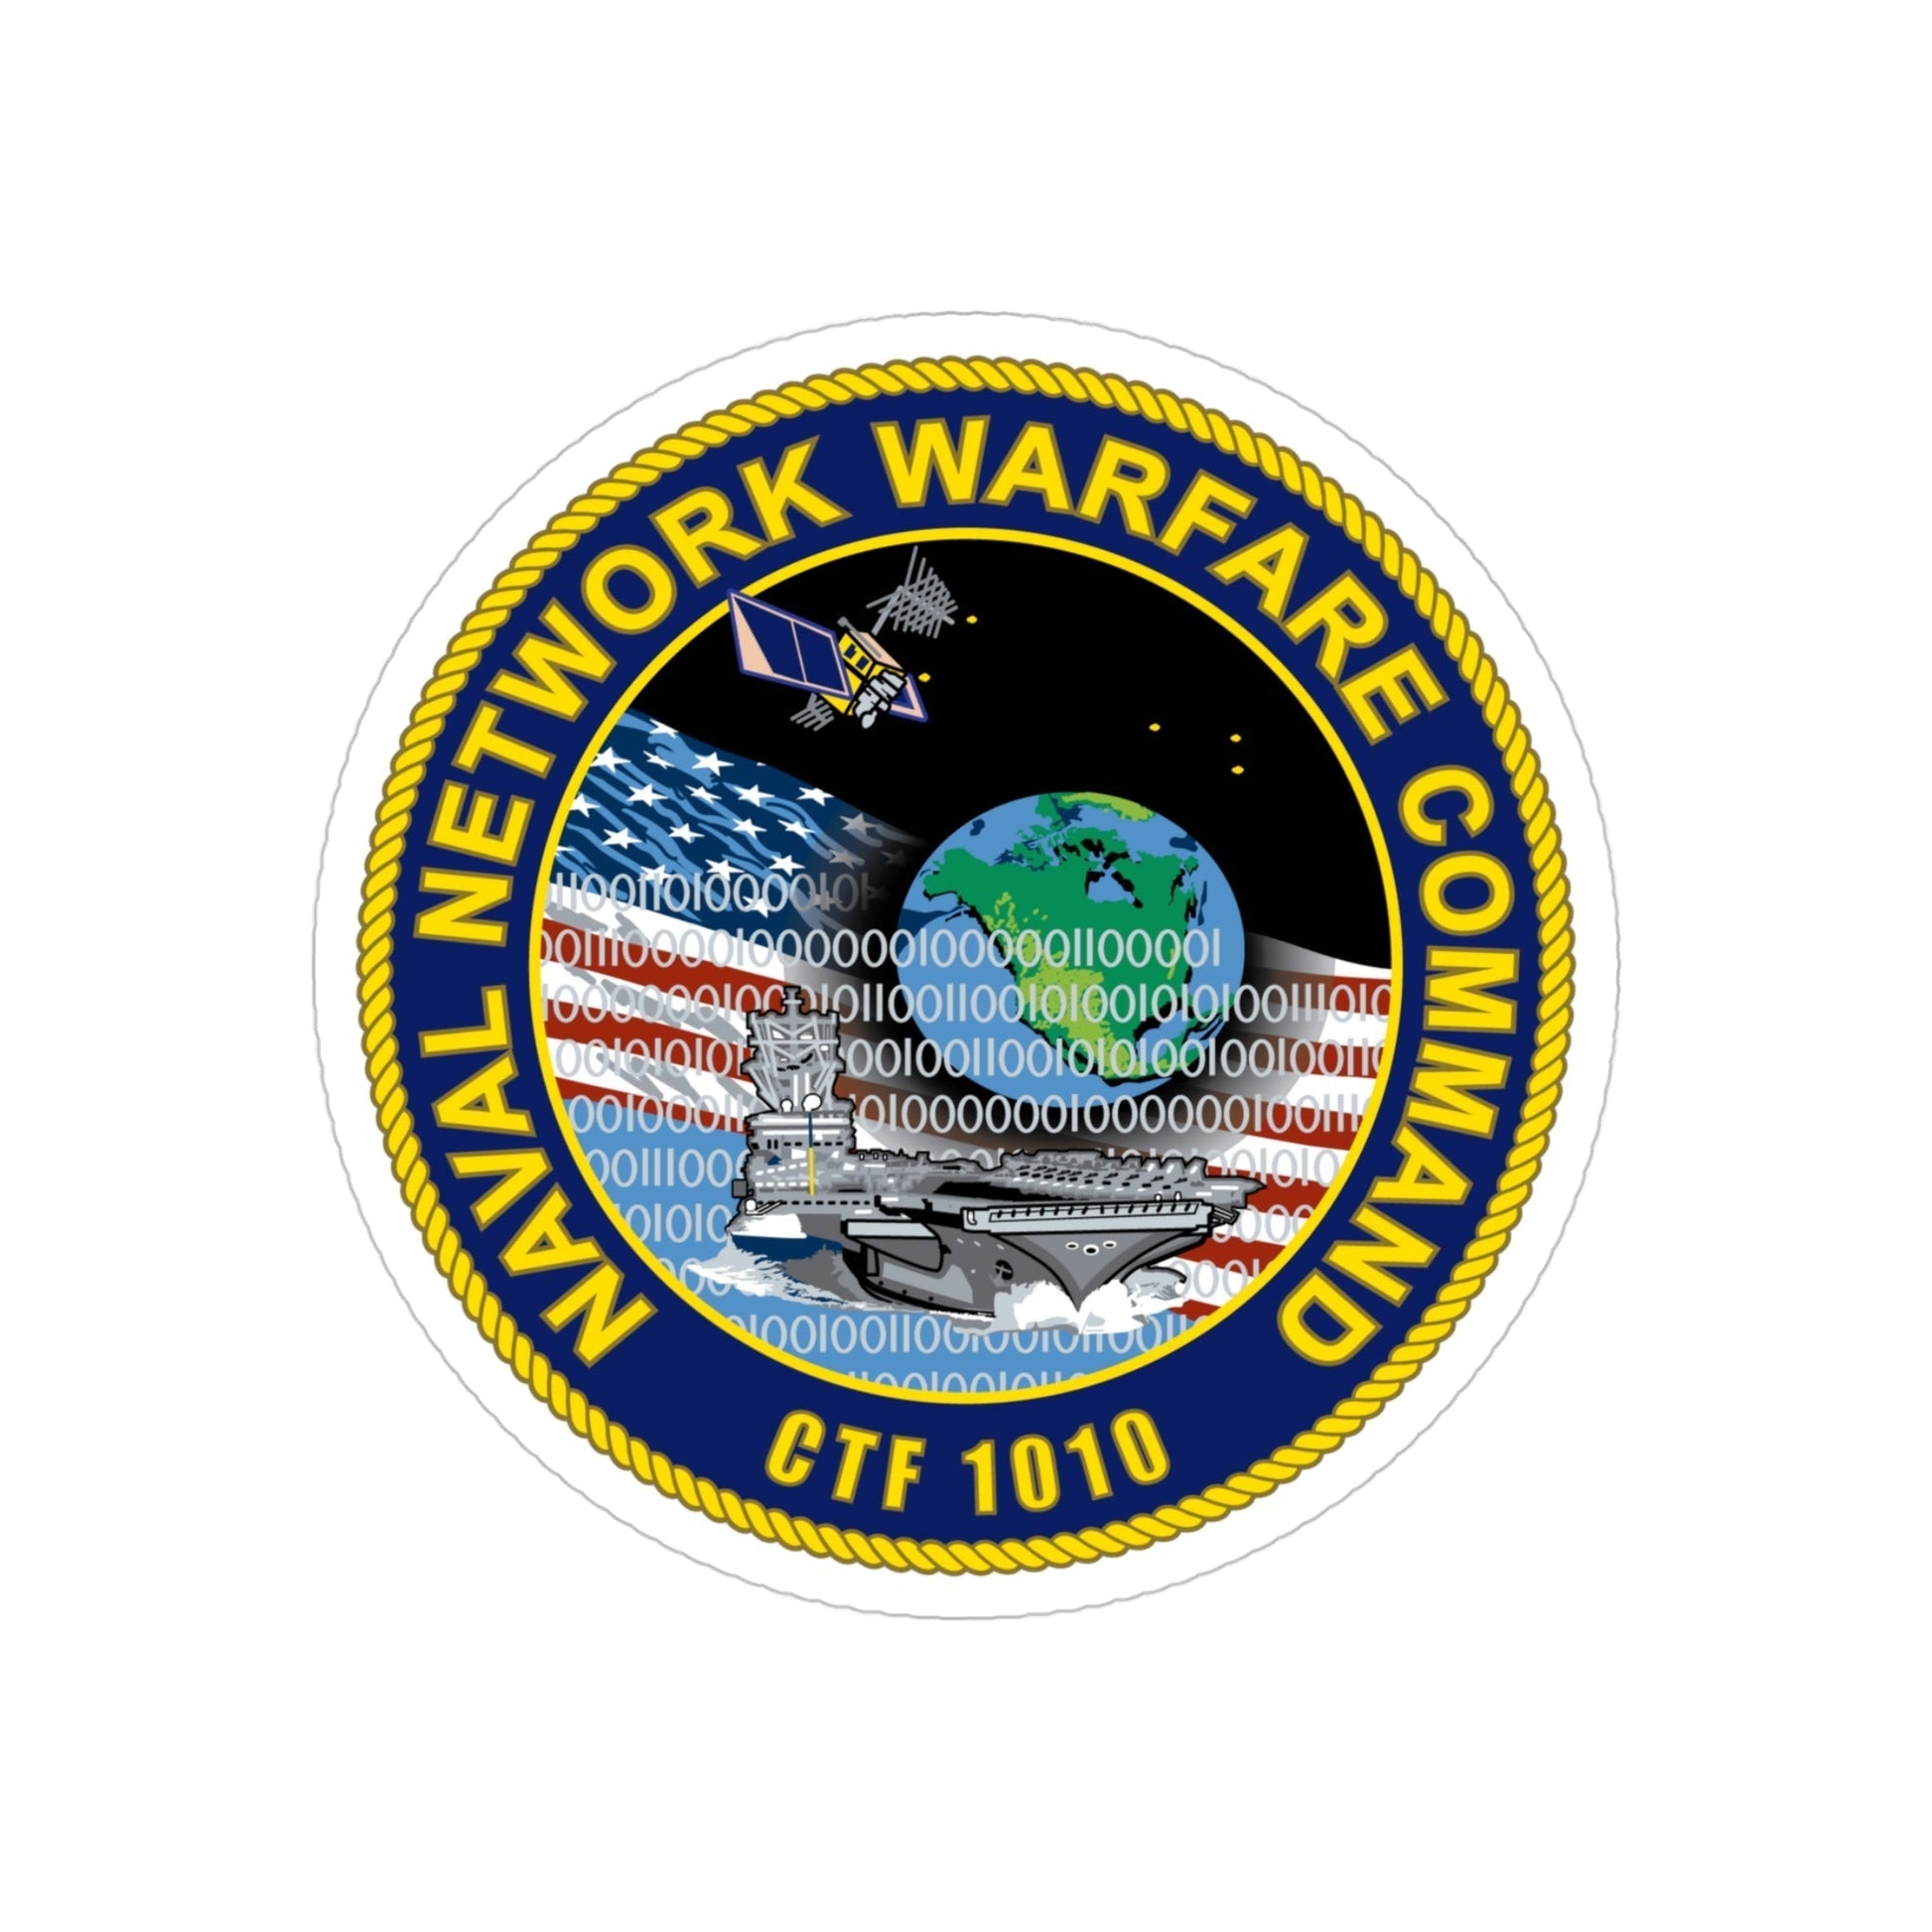 Naval Network Warfare Command CFT 1010 (U.S. Navy) Transparent STICKER Die-Cut Vinyl Decal-4 Inch-The Sticker Space